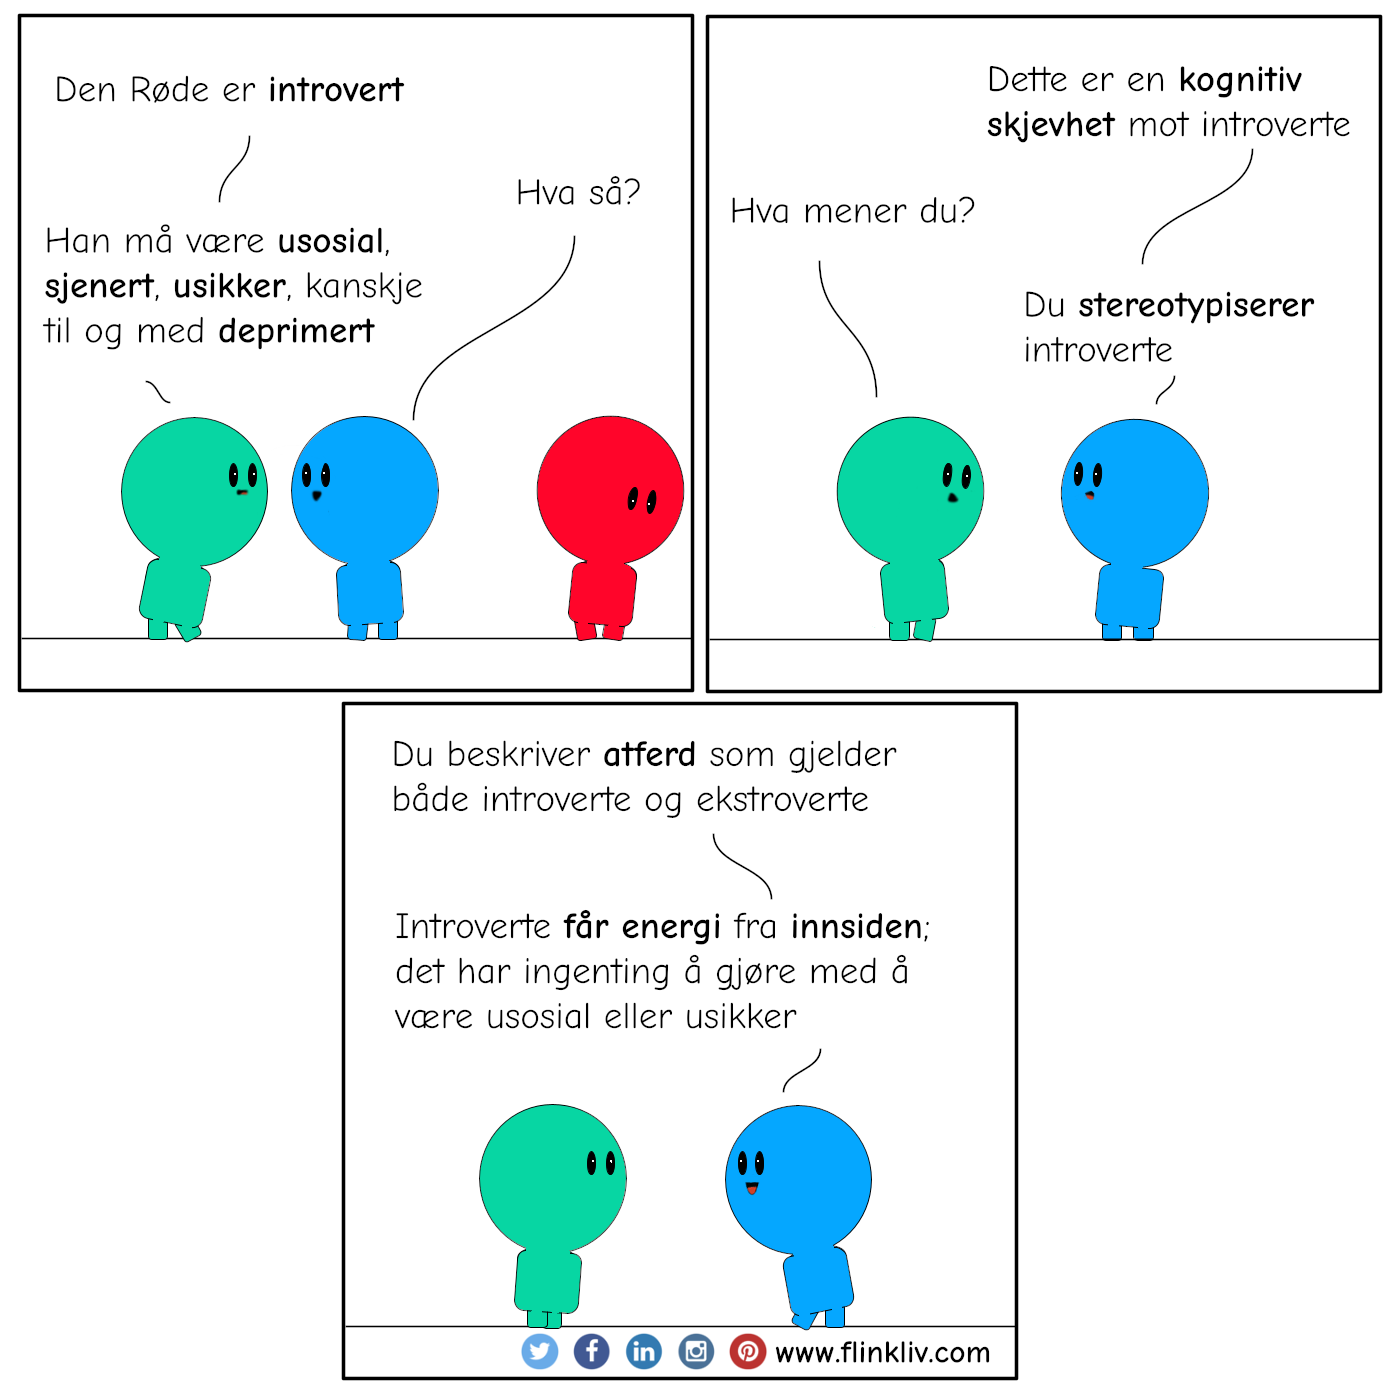 Samtale mellom A og B om kognitiv skjevhet mot introverte.
              A: Den røde er introvert
              B: Hva så?
              A: Han må være usosial, sjenert, usikker, kanskje til og med deprimert

              B: Dette er en kognitiv skjevhet mot introverte
              A: Hva mener du?
              B: Du stereotypiserer introverte

              B: Du beskriver atferd som gjelder både introverte og ekstroverte
              B: Introverte får energi fra innsiden; det har ingenting å gjøre med å være usosial eller usikker

              